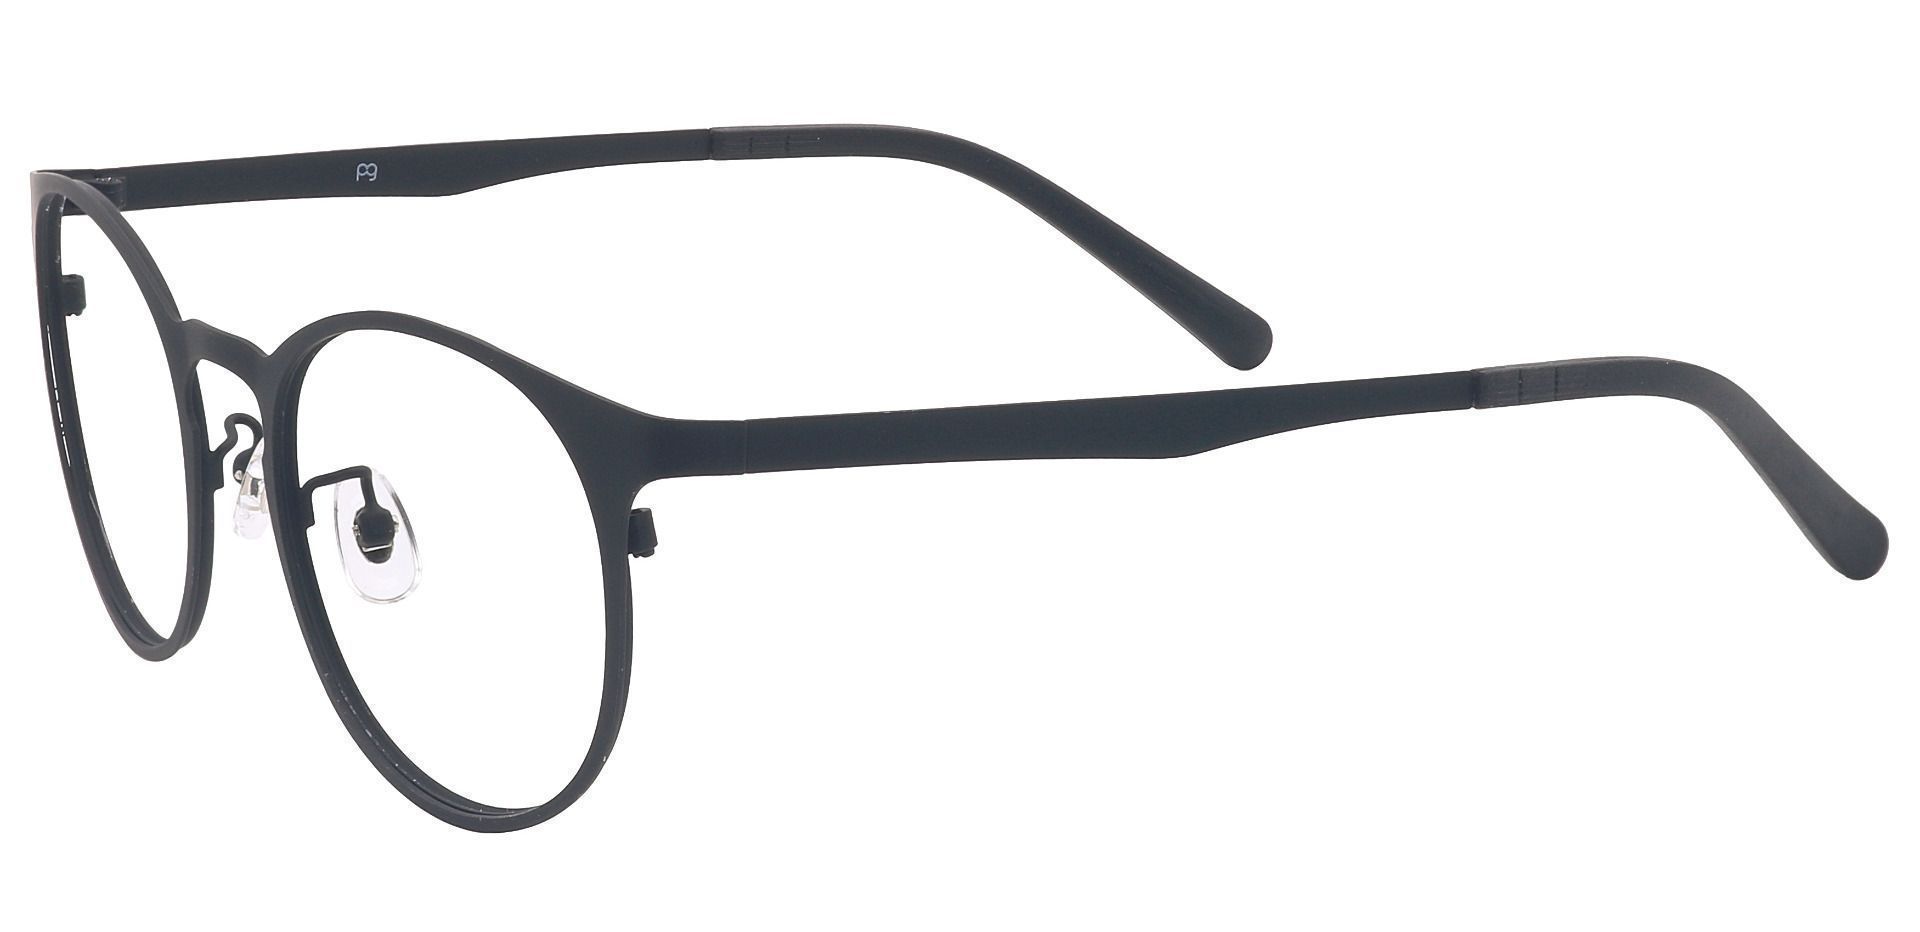 Wallace Oval Non-Rx Glasses - Black